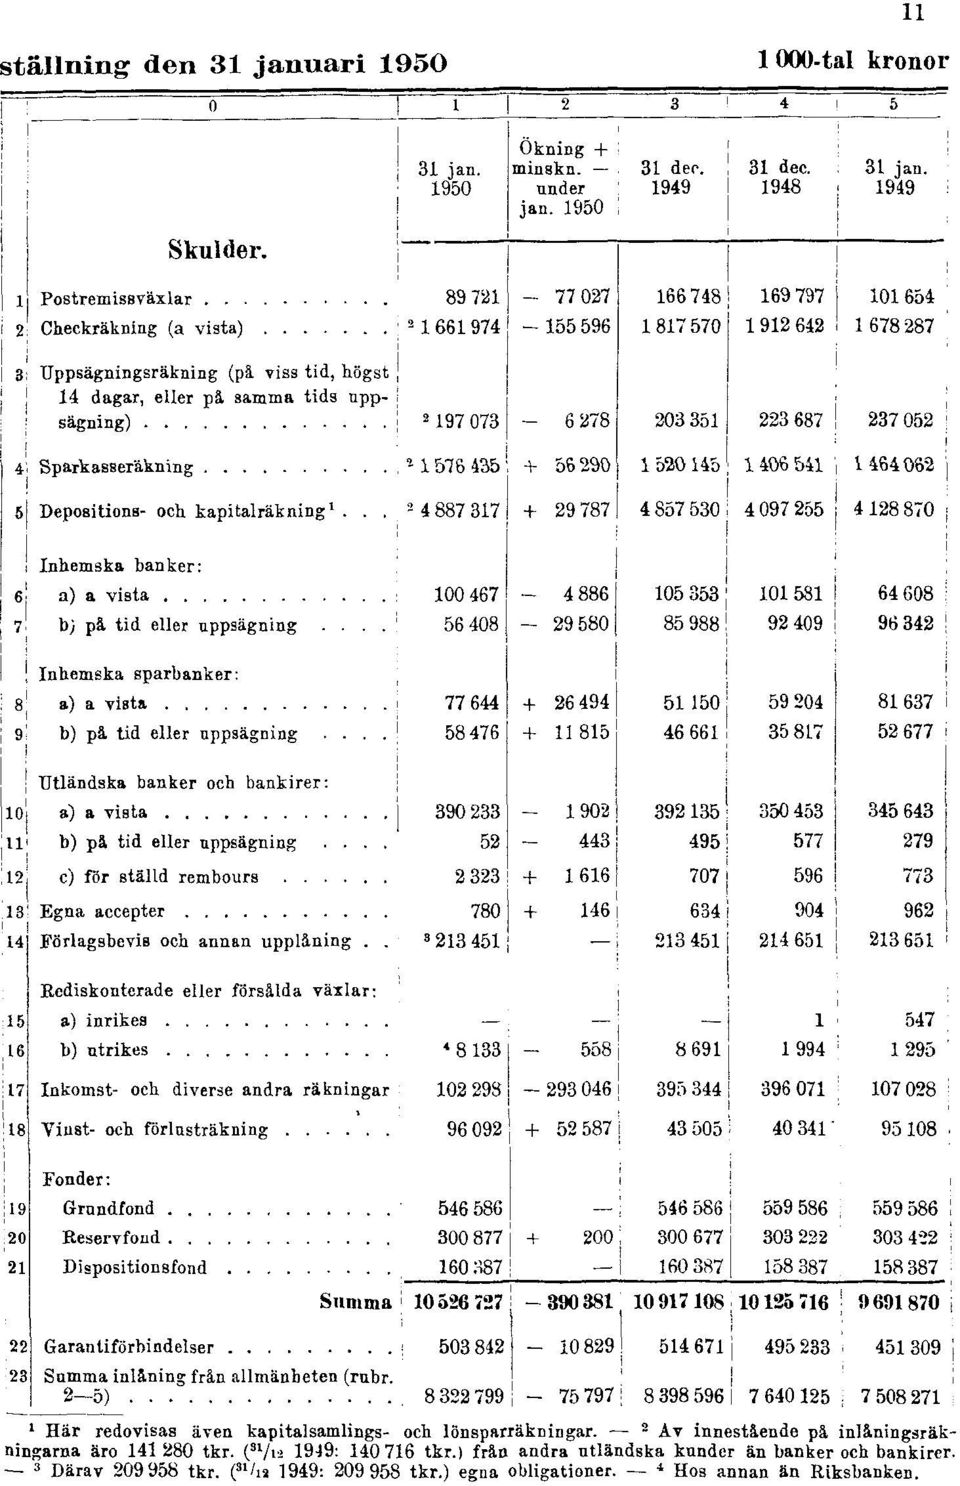 2 Av innestående på inlåningsräkningarna äro 141 280 tkr. ( 31 /12 1949: 140 716 tkr.